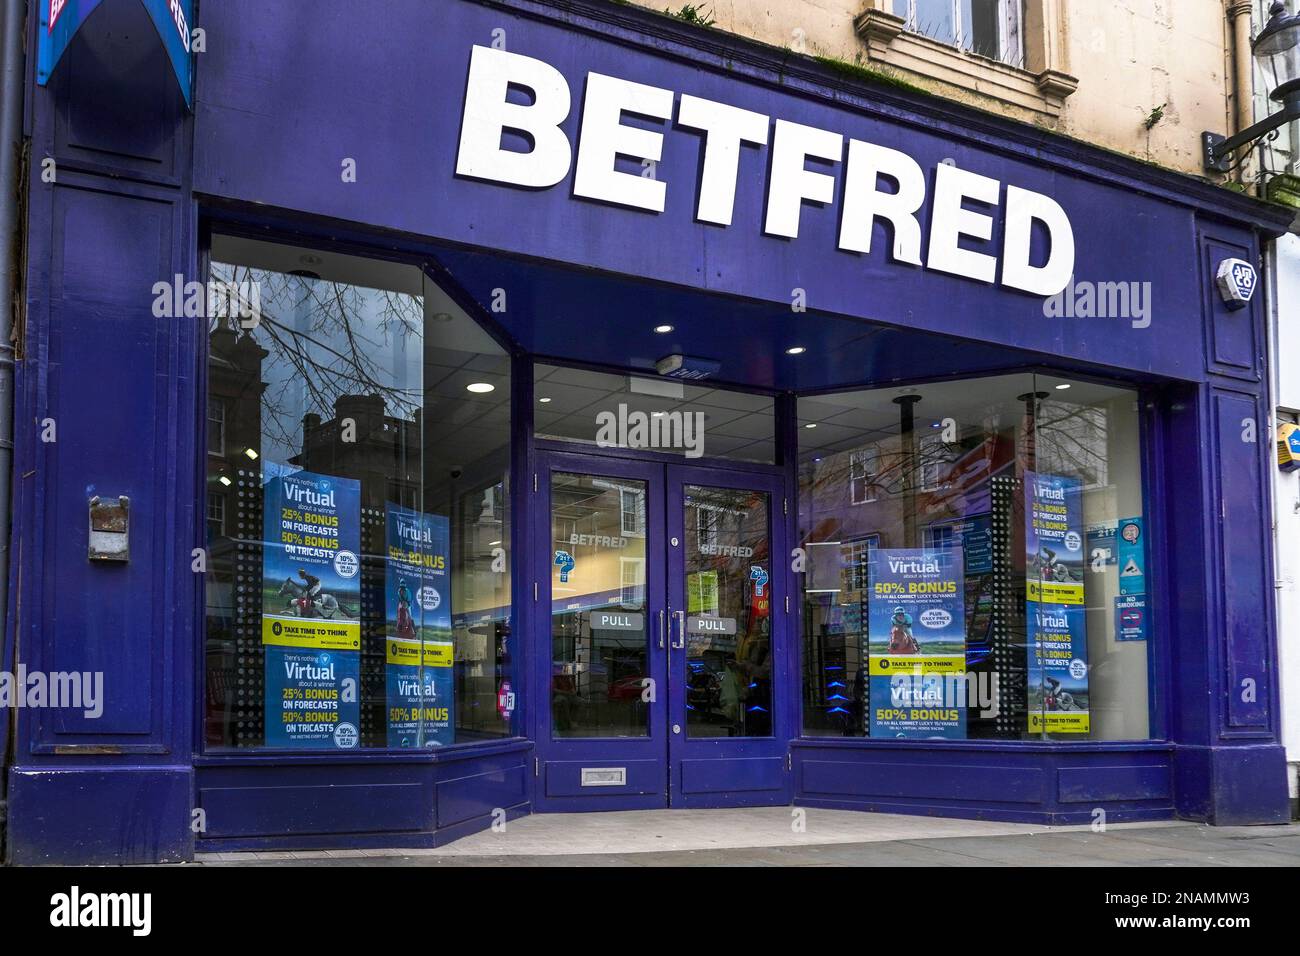 Entrée à la librairie 'Betfred', montrant certaines des offres sur des affiches dans la fenêtre. Ayr, Écosse, Royaume-Uni Banque D'Images